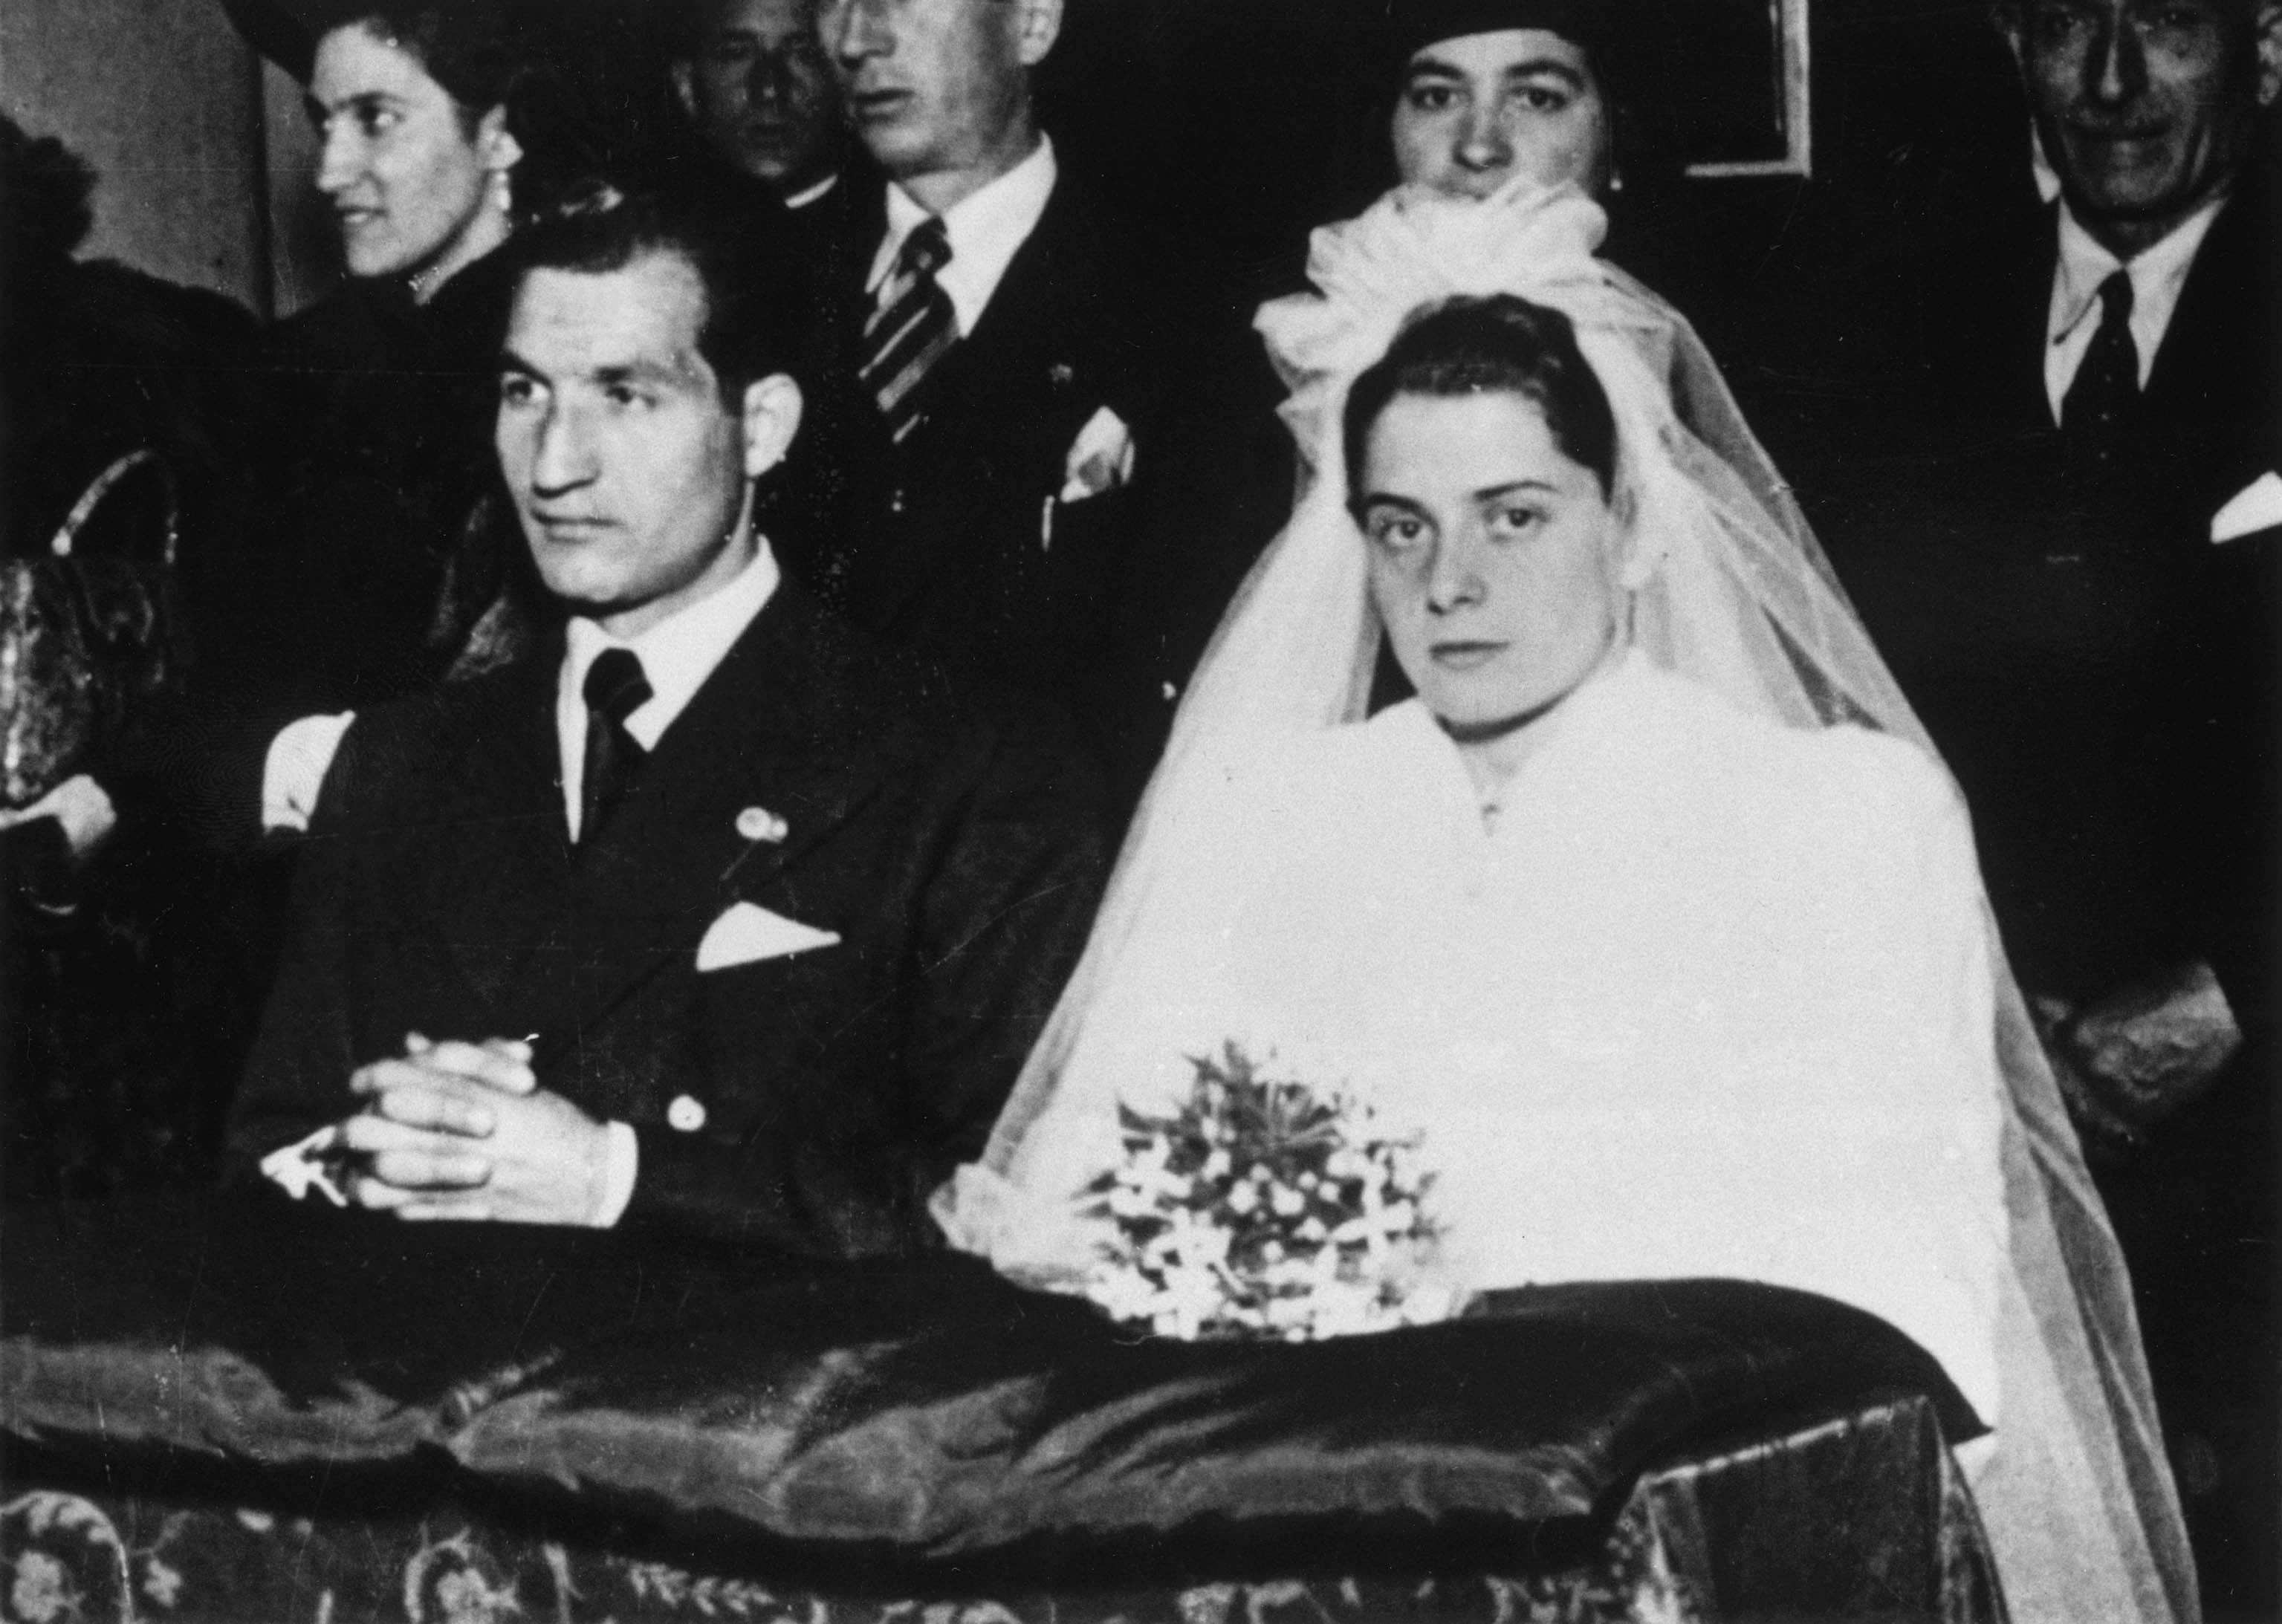 Il matrimonio di Gino Bartali con Adriana Bani, a Firenze nel 1940